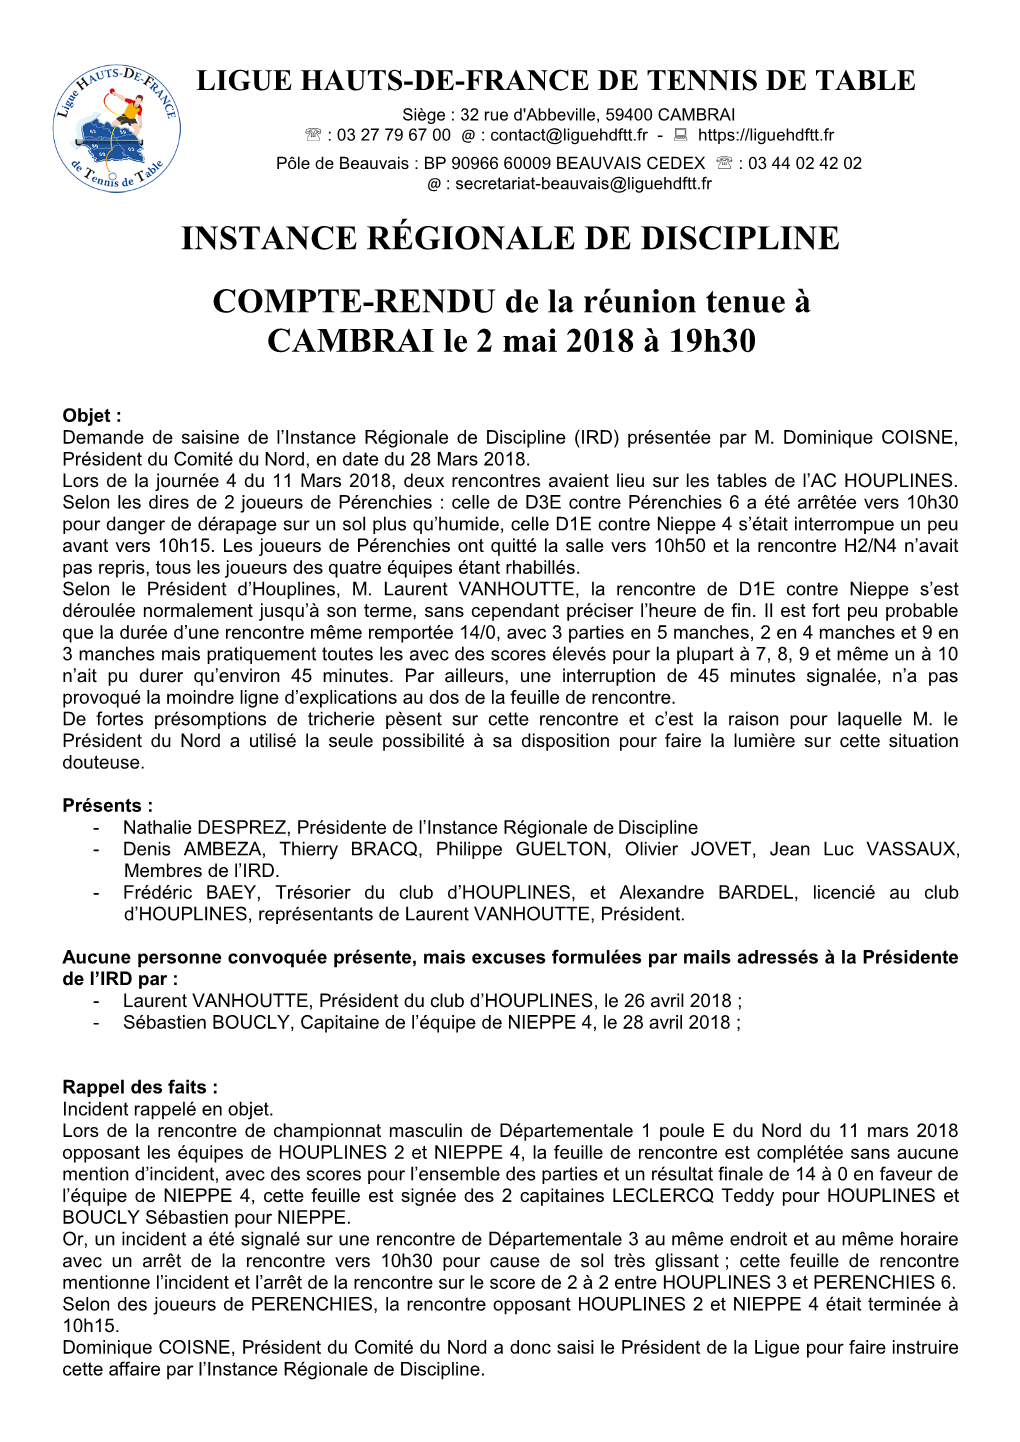 INSTANCE RÉGIONALE DE DISCIPLINE COMPTE-RENDU De